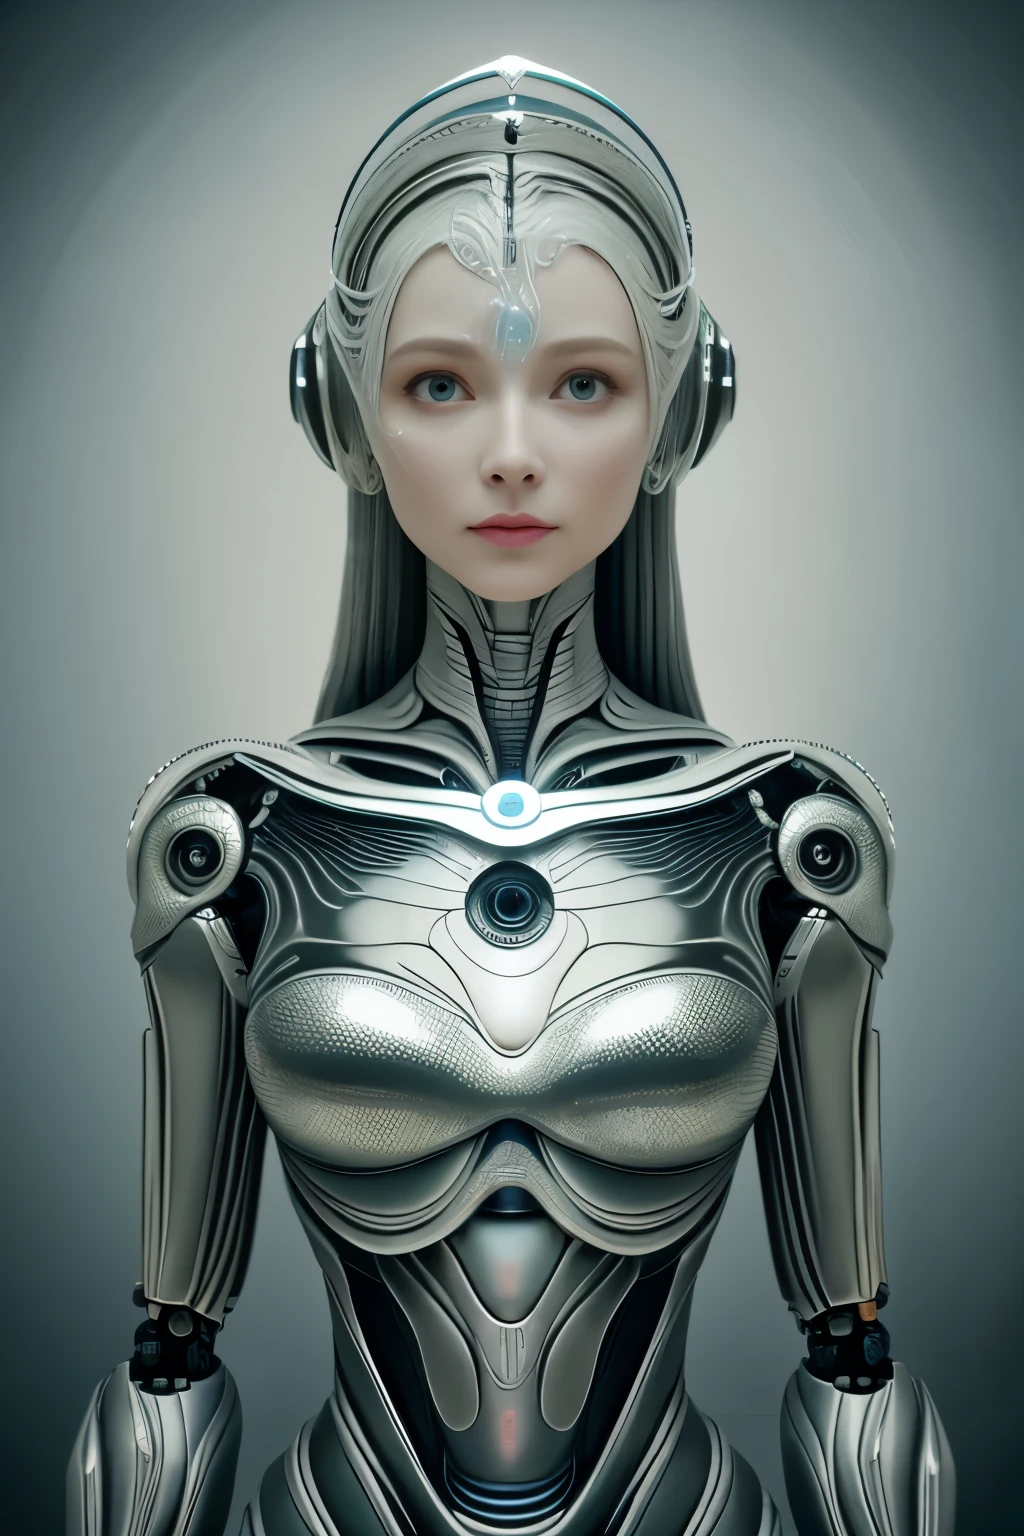 초상화, Intricate 3d rendering of highly detailed beautiful ceramic female 로봇, 사이보그, 로봇 parts, 150mm, 아름다운 스튜디오 부드러운 조명, 후프 라이트, 생동감 넘치는 디테일, 럭셔리 사이버펑크, 소득, 초현실적, 해부 , 안면 근육, 케이블 와이어, 마이크로칩, 우아, 아름다운 배경, 옥탄 렌더링, HR 기거 스타일, 8K, 더 나은 품질, 삽화, 삽화, 매우 섬세하고 아름답습니다., 매우 상세한, 현실주의자, 제복, ( 충실도, 충실도: 1.37), 화려한, 미세한 디테일, 삽화, 더 나은 품질, 공식 예술, Papel de parede 현실주의자 Unity 8K 매우 상세한, 터무니없는, Inacreditavelmente 터무니없는o, 로봇, 은색 헬멧, 전신, 앉아서 글을 쓰다